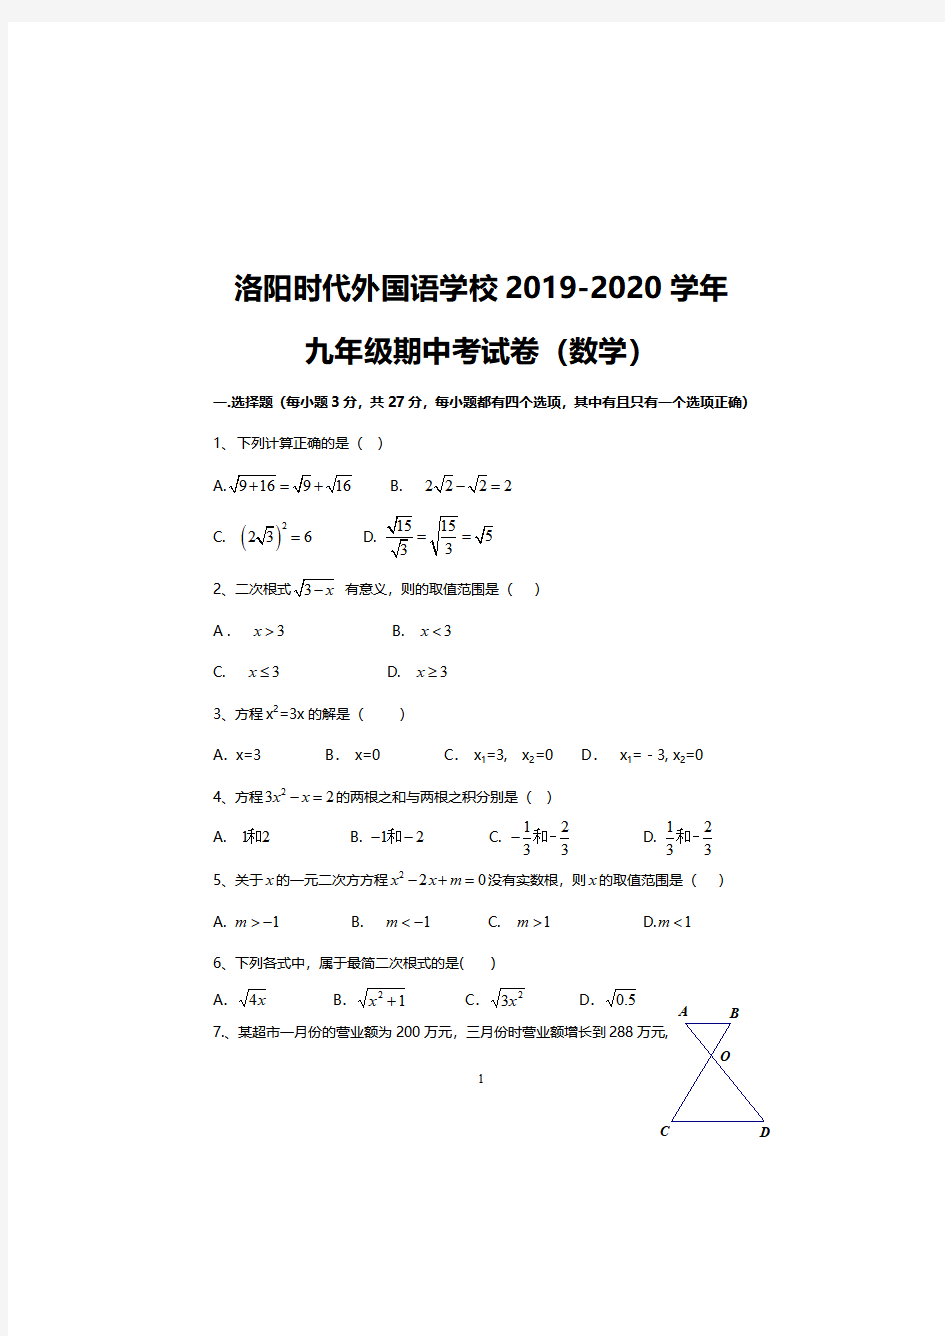 洛阳时代外国语学校2019-2020学年九年级上册数学期中考试试卷及答案解析